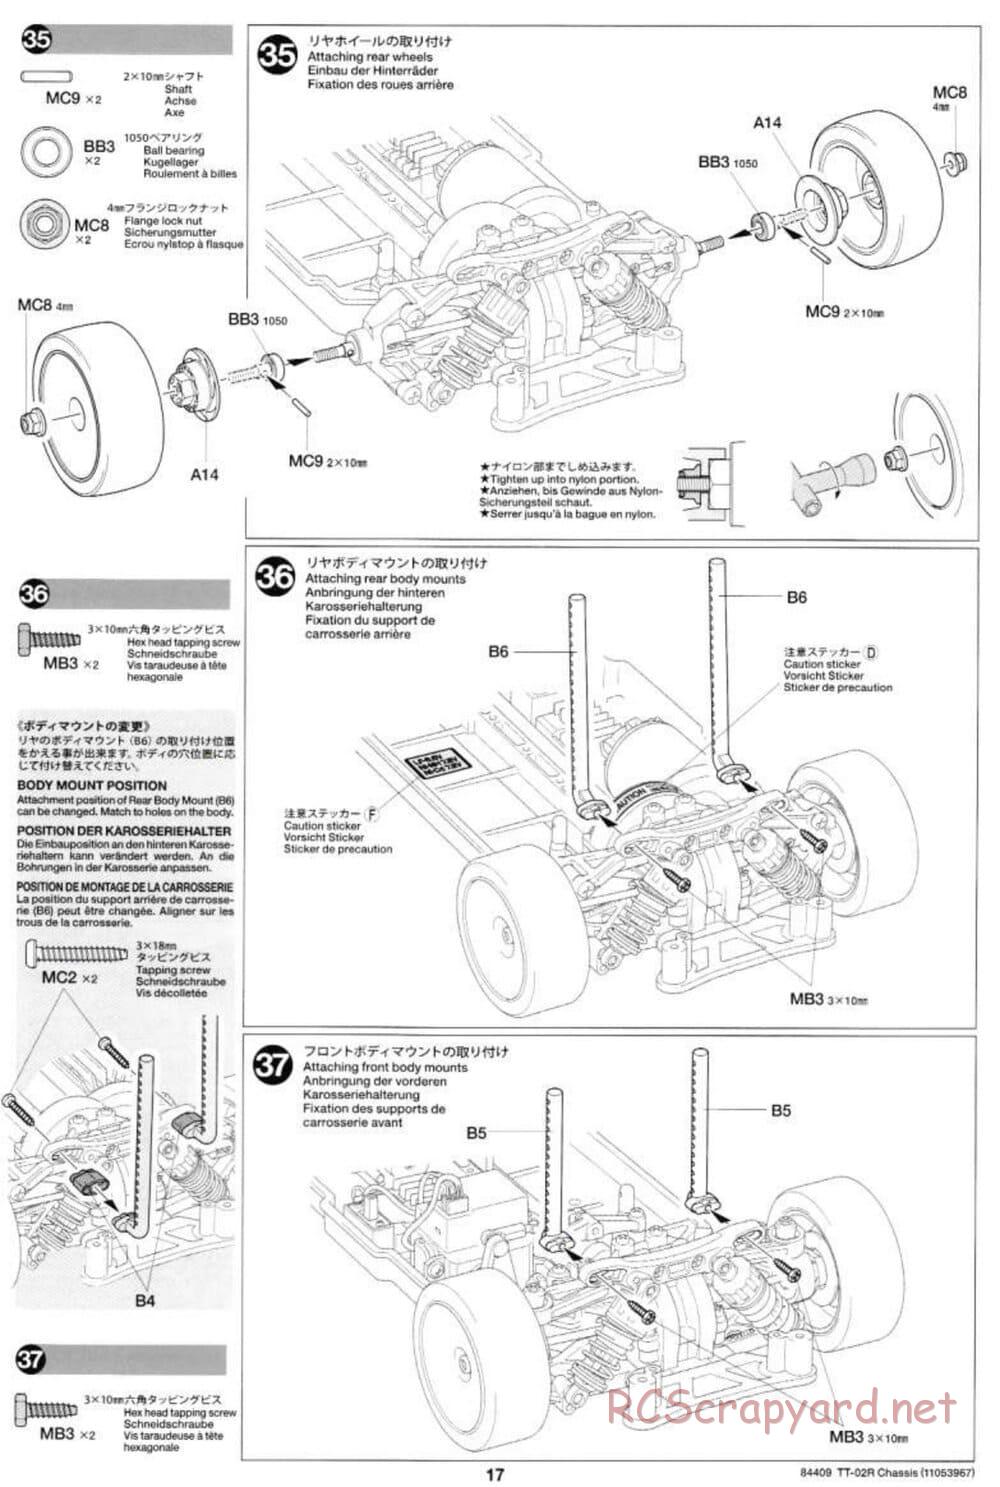 Tamiya - TT-02R Chassis - Manual - Page 17